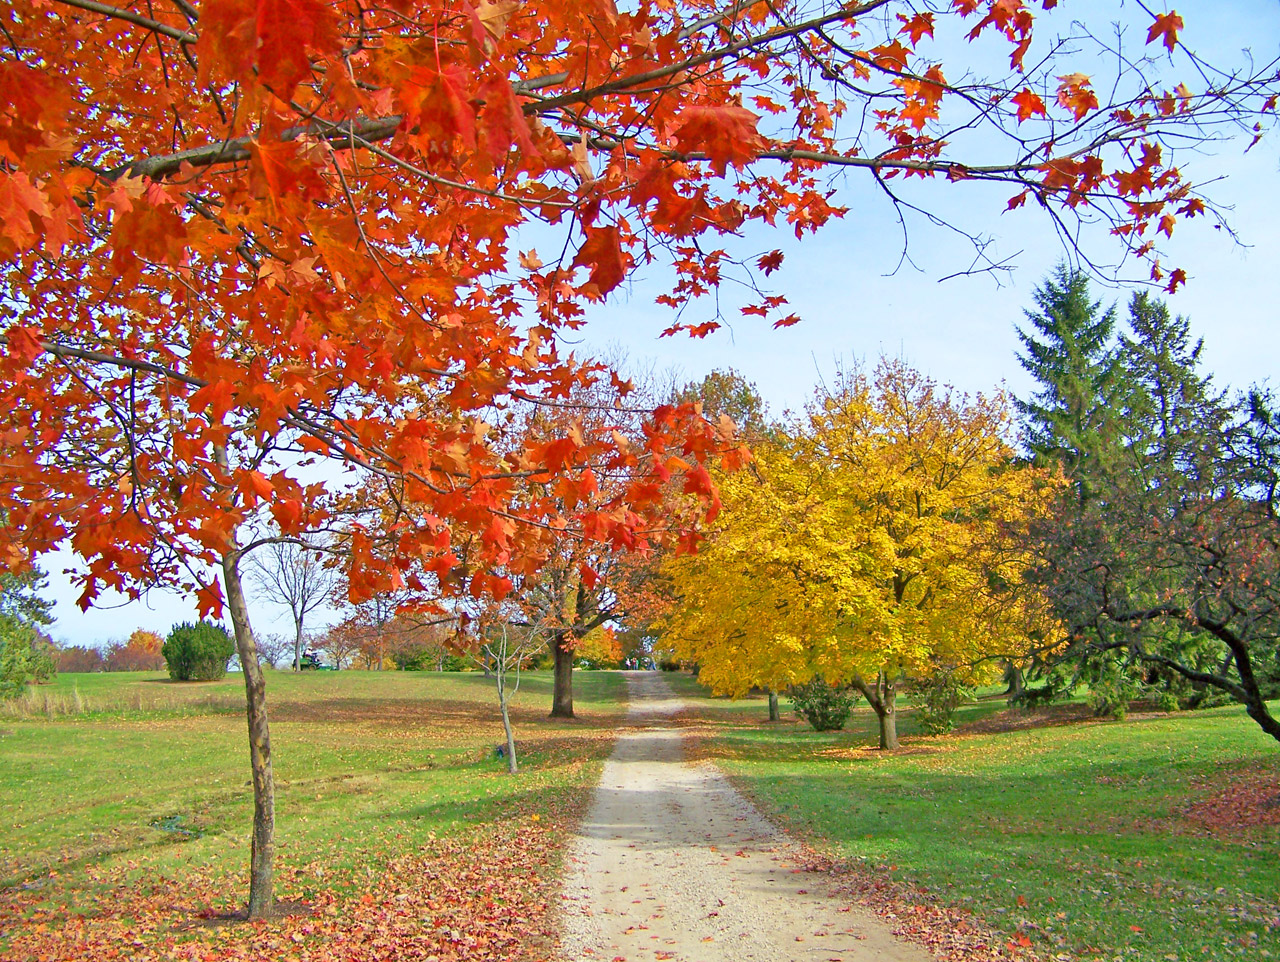 A path through autumn trees